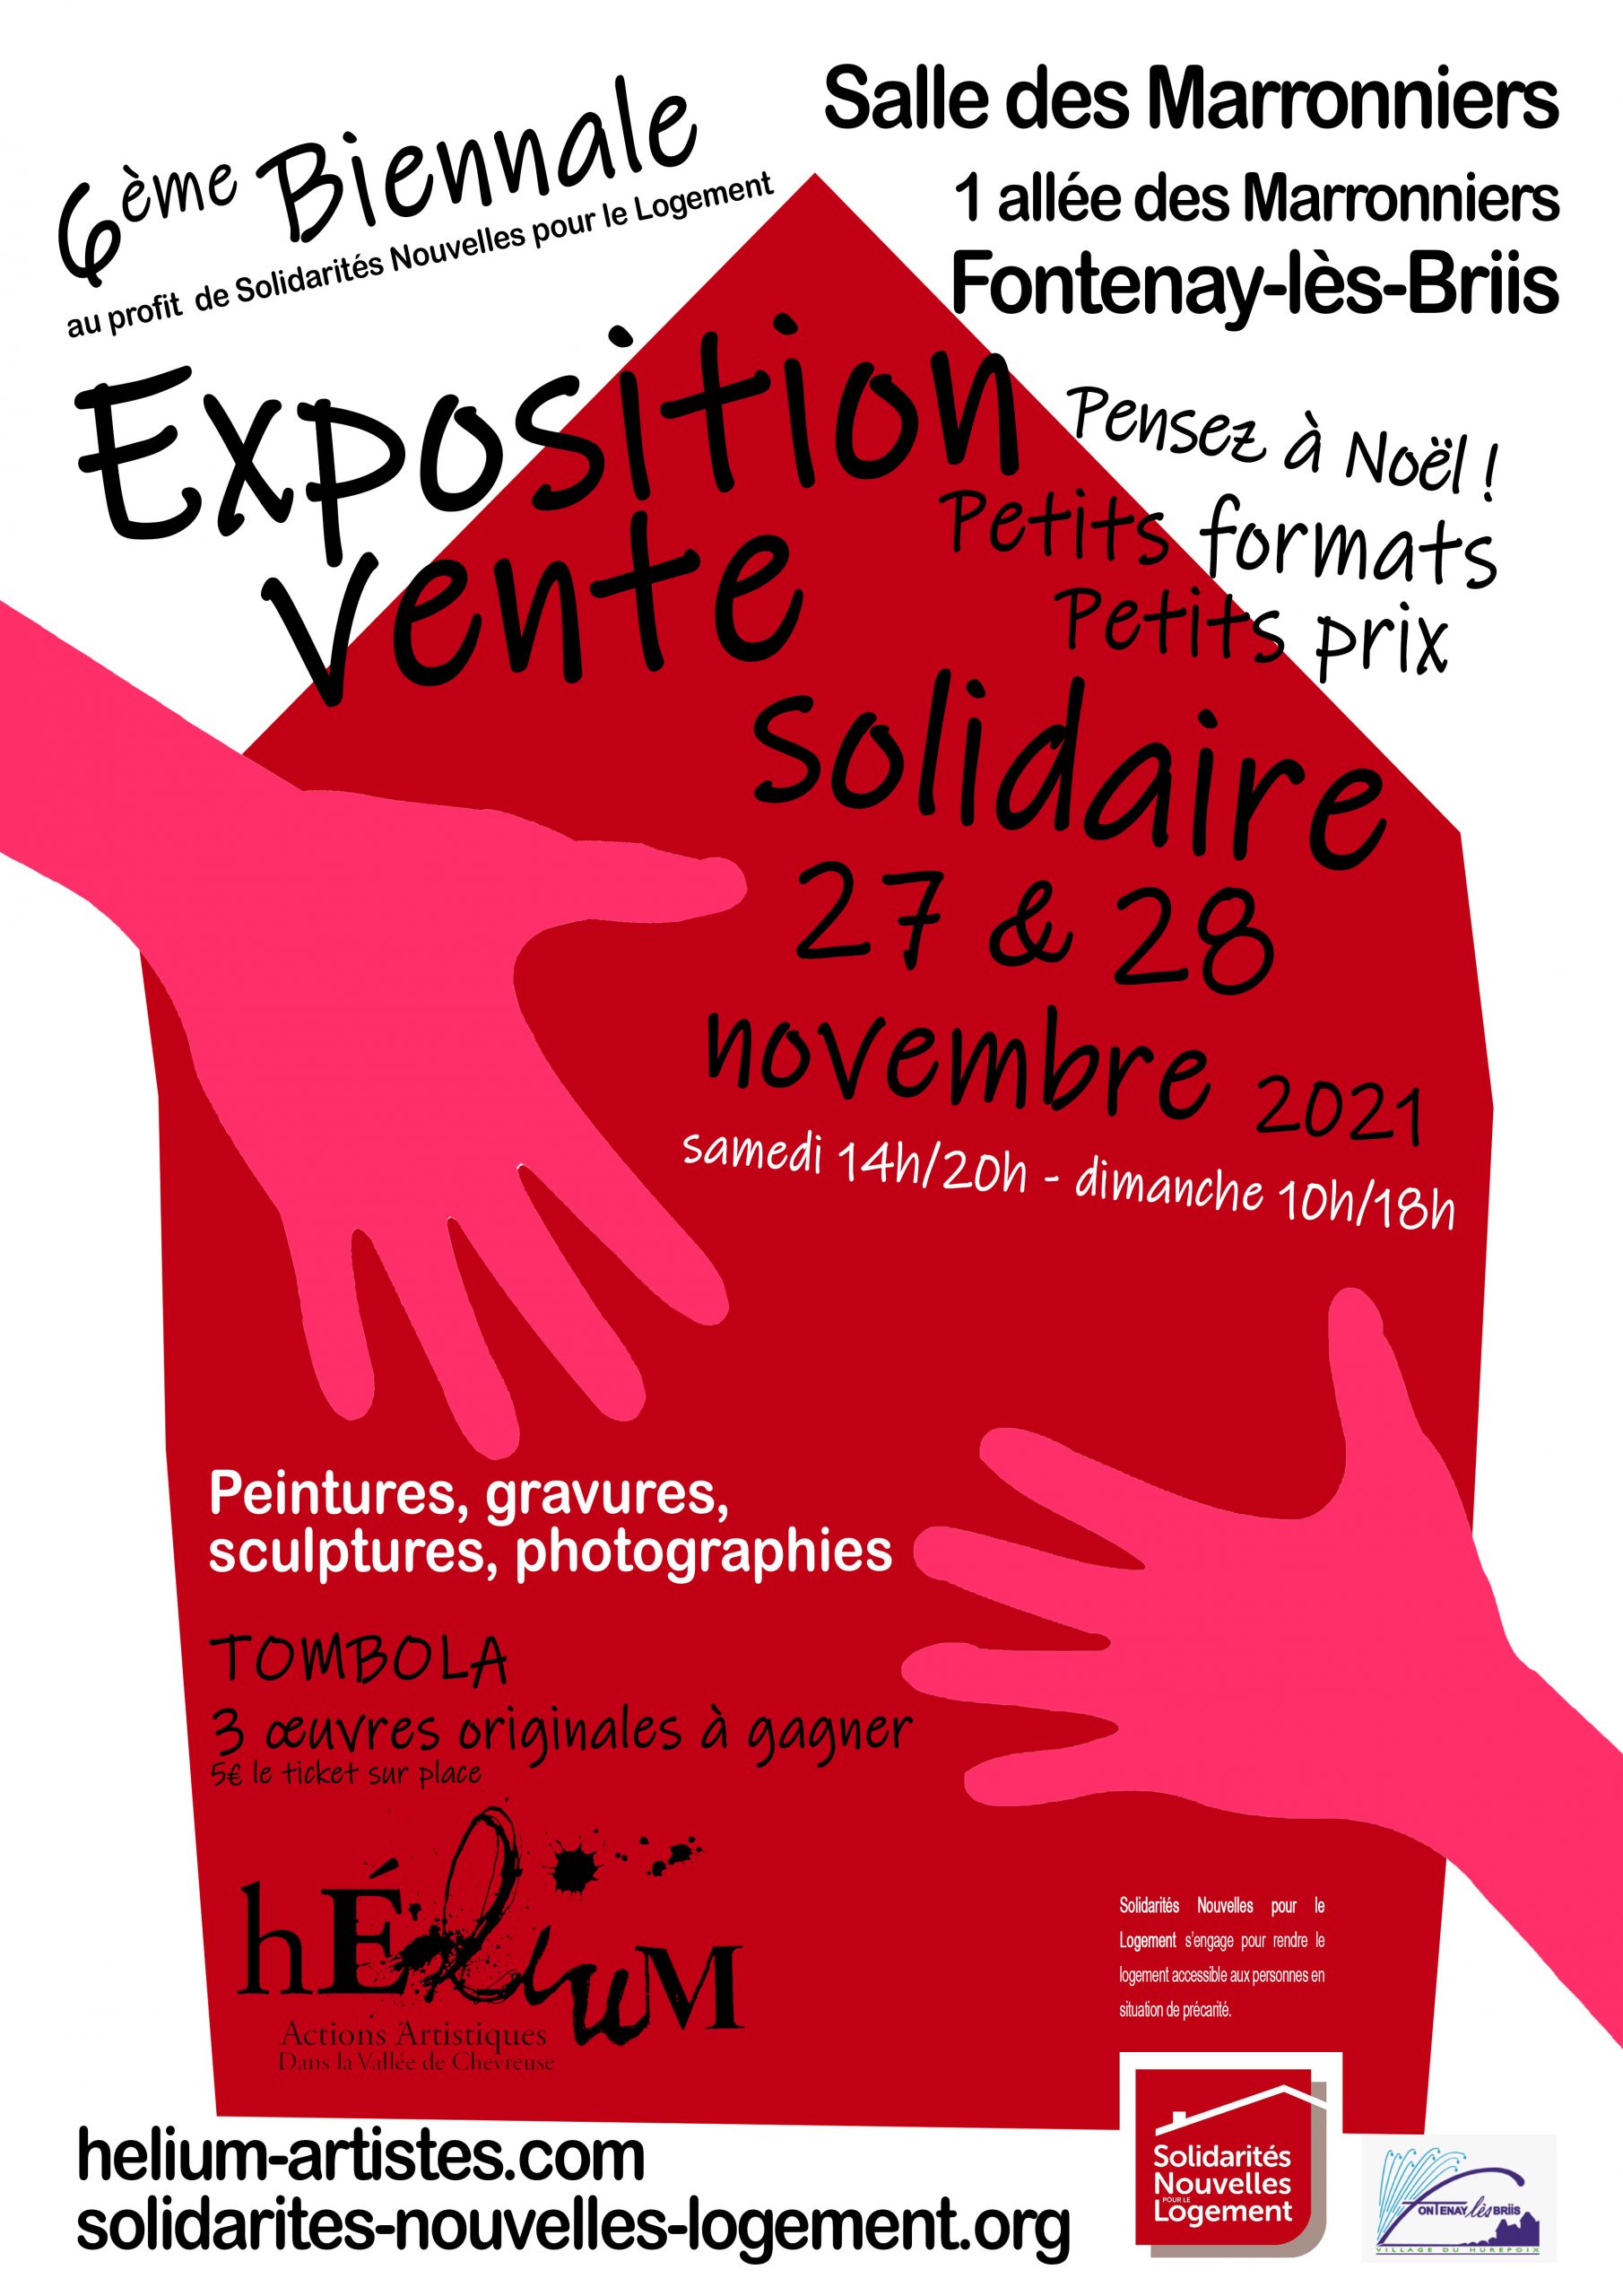 6ème Biennale Exposition Vente Solidaire - SNL/Hélium